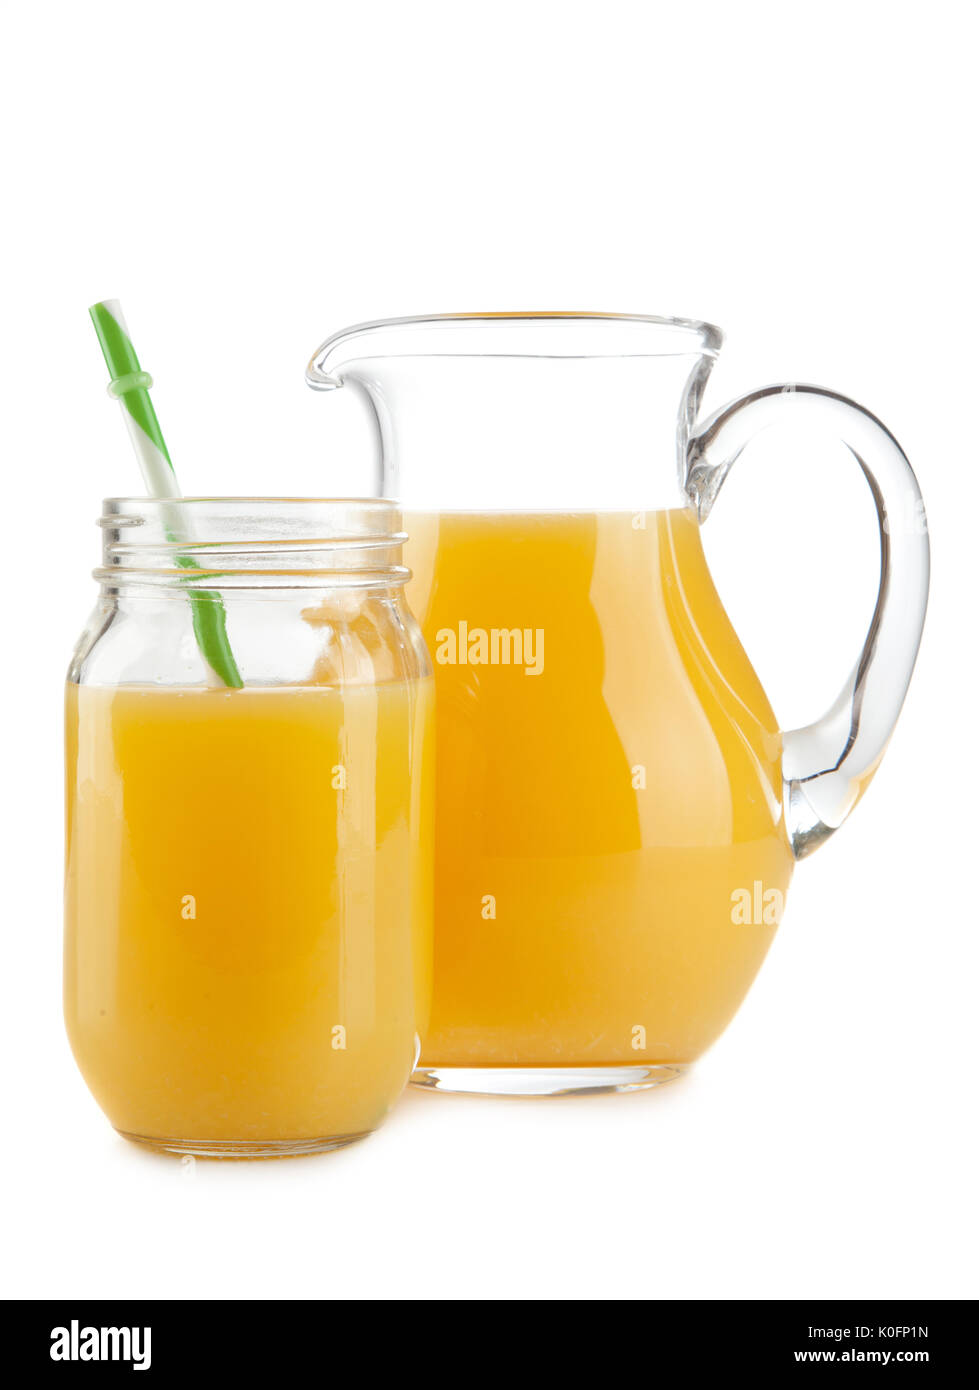 https://c8.alamy.com/comp/K0FP1N/jar-of-orange-juice-K0FP1N.jpg